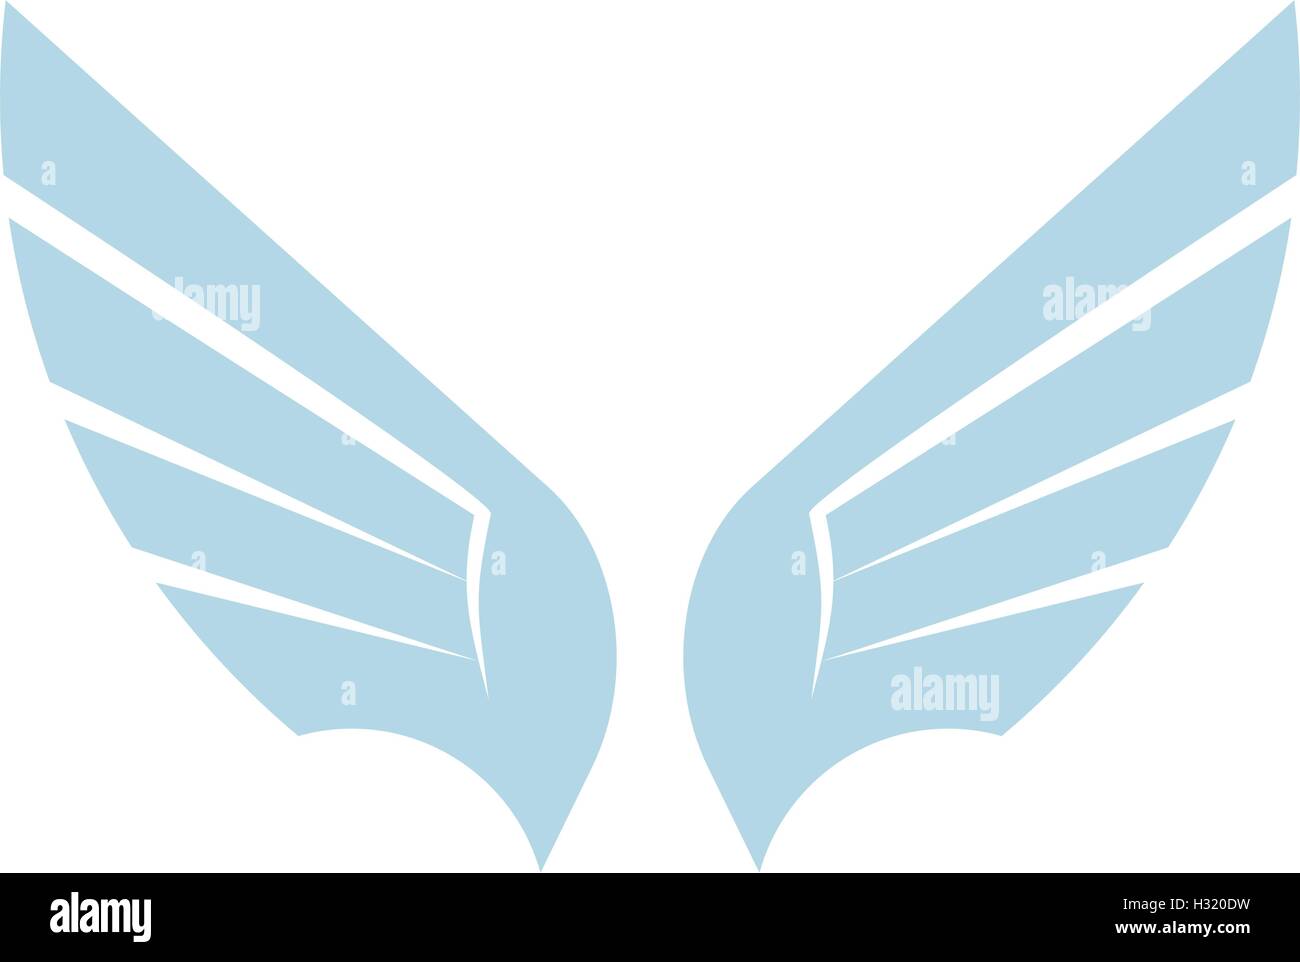 Abstract isolato di colore blu elemento bird logo. Diffusione di ali con piume logotipo. Icona di volo. Segno dell'aria. Illustrazione Vettoriale. Il simbolo della compagnia aerea. Illustrazione Vettoriale